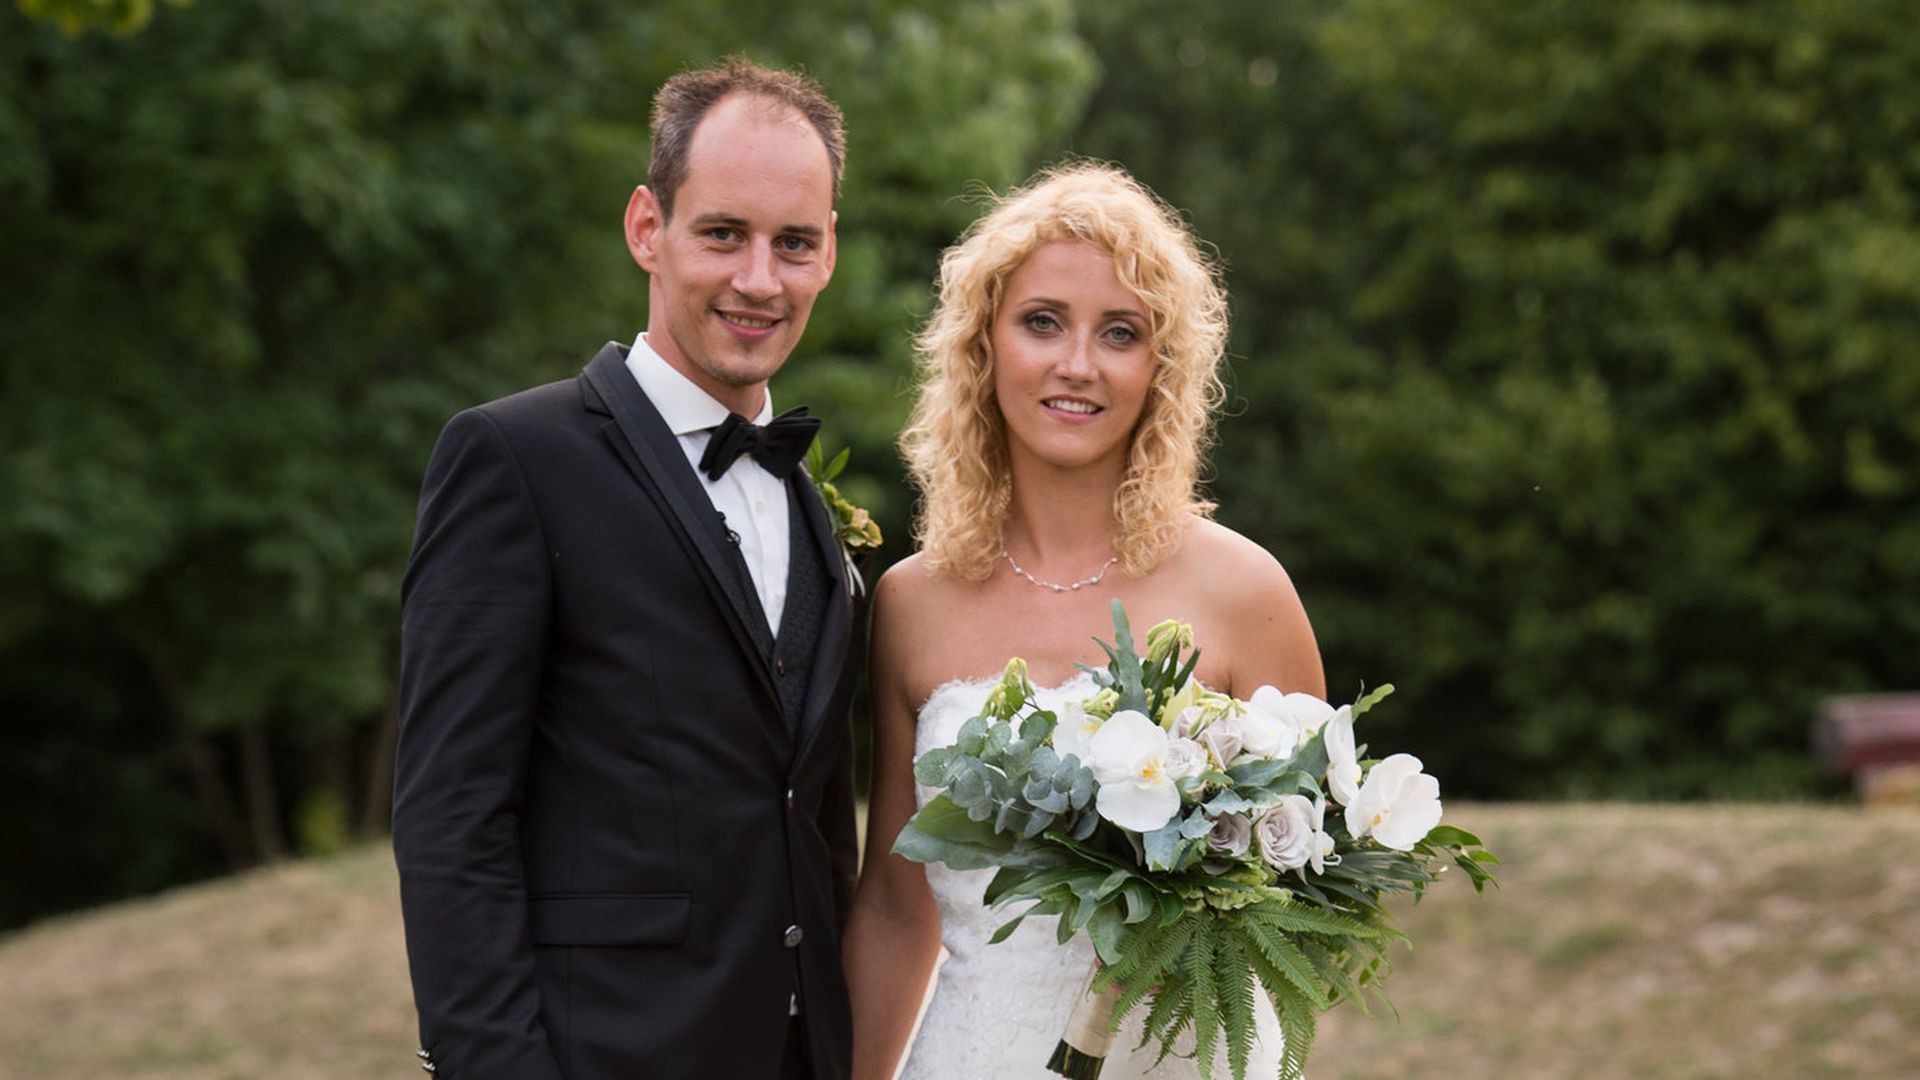 Hochzeit Auf Den Ersten Blick Steve
 Honeymoon Zwischenfall Krise bei HadeB Selina und Steve